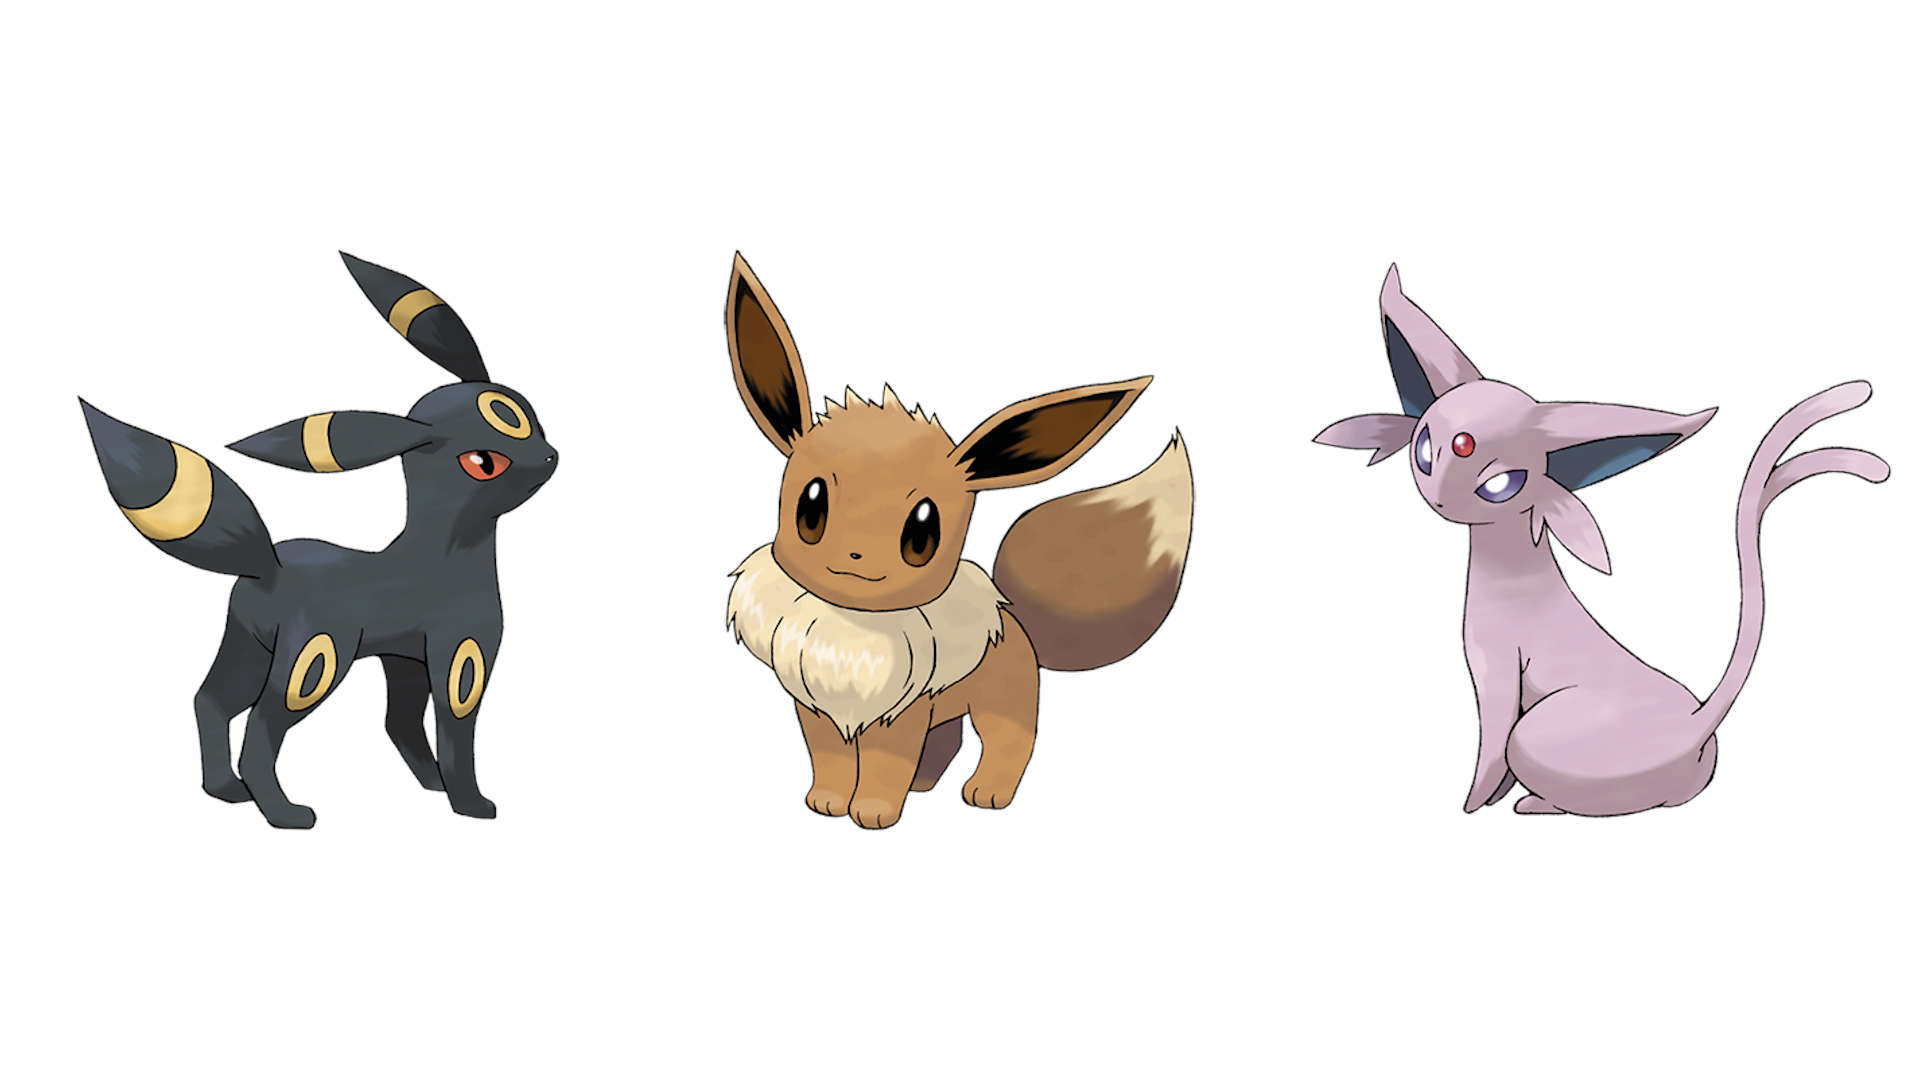 Pokémon Go Eevee Evolution - Eevee neben Umbreon und Espeon gegen einen weißen Hintergrund